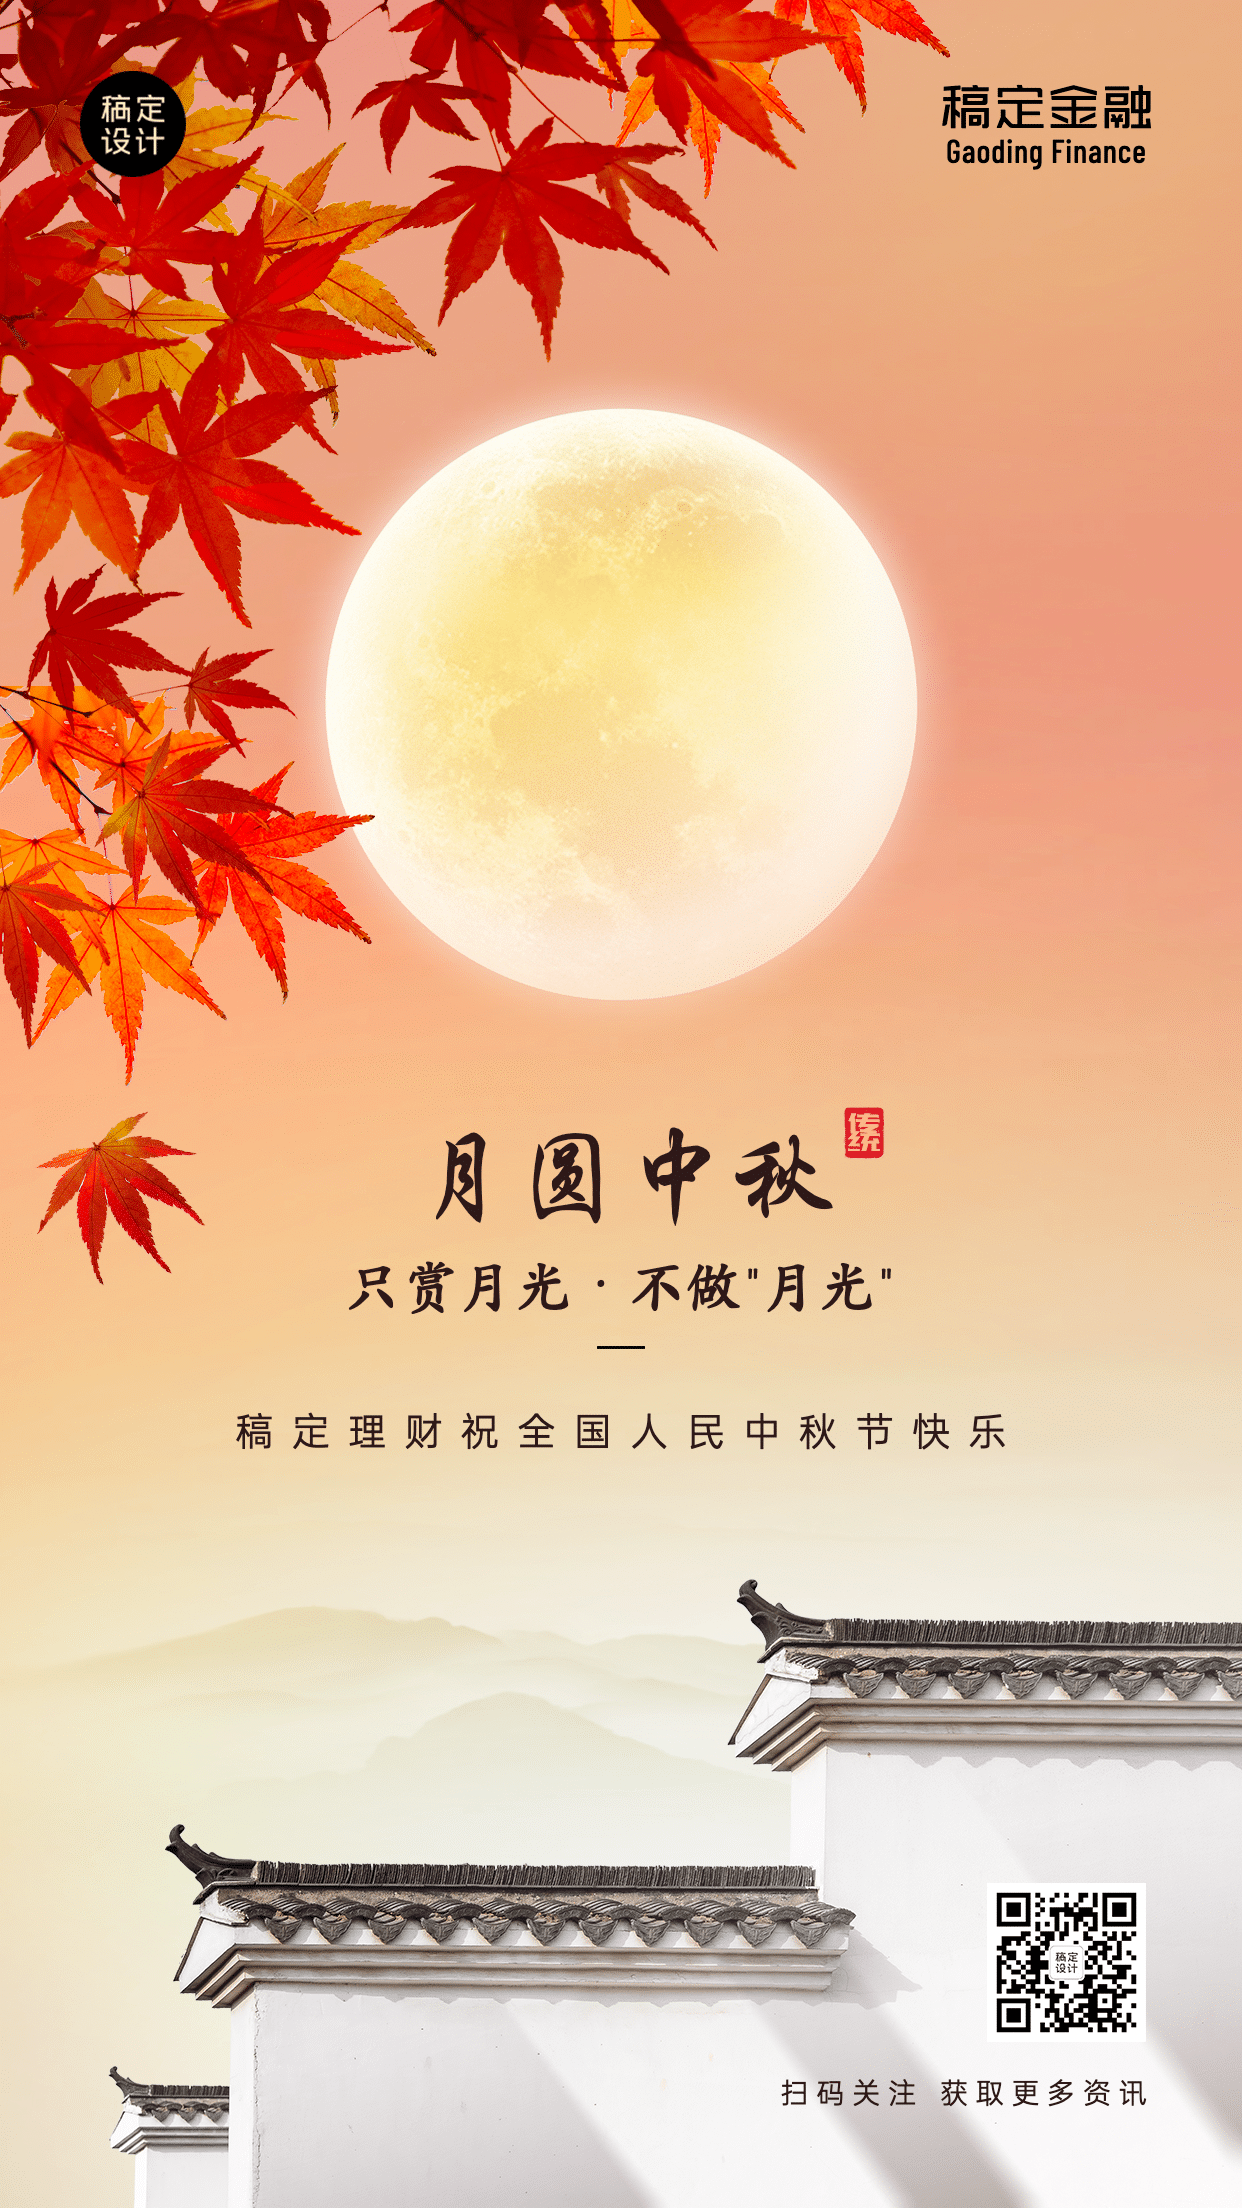 中秋节金融保险节日祝福文艺海报